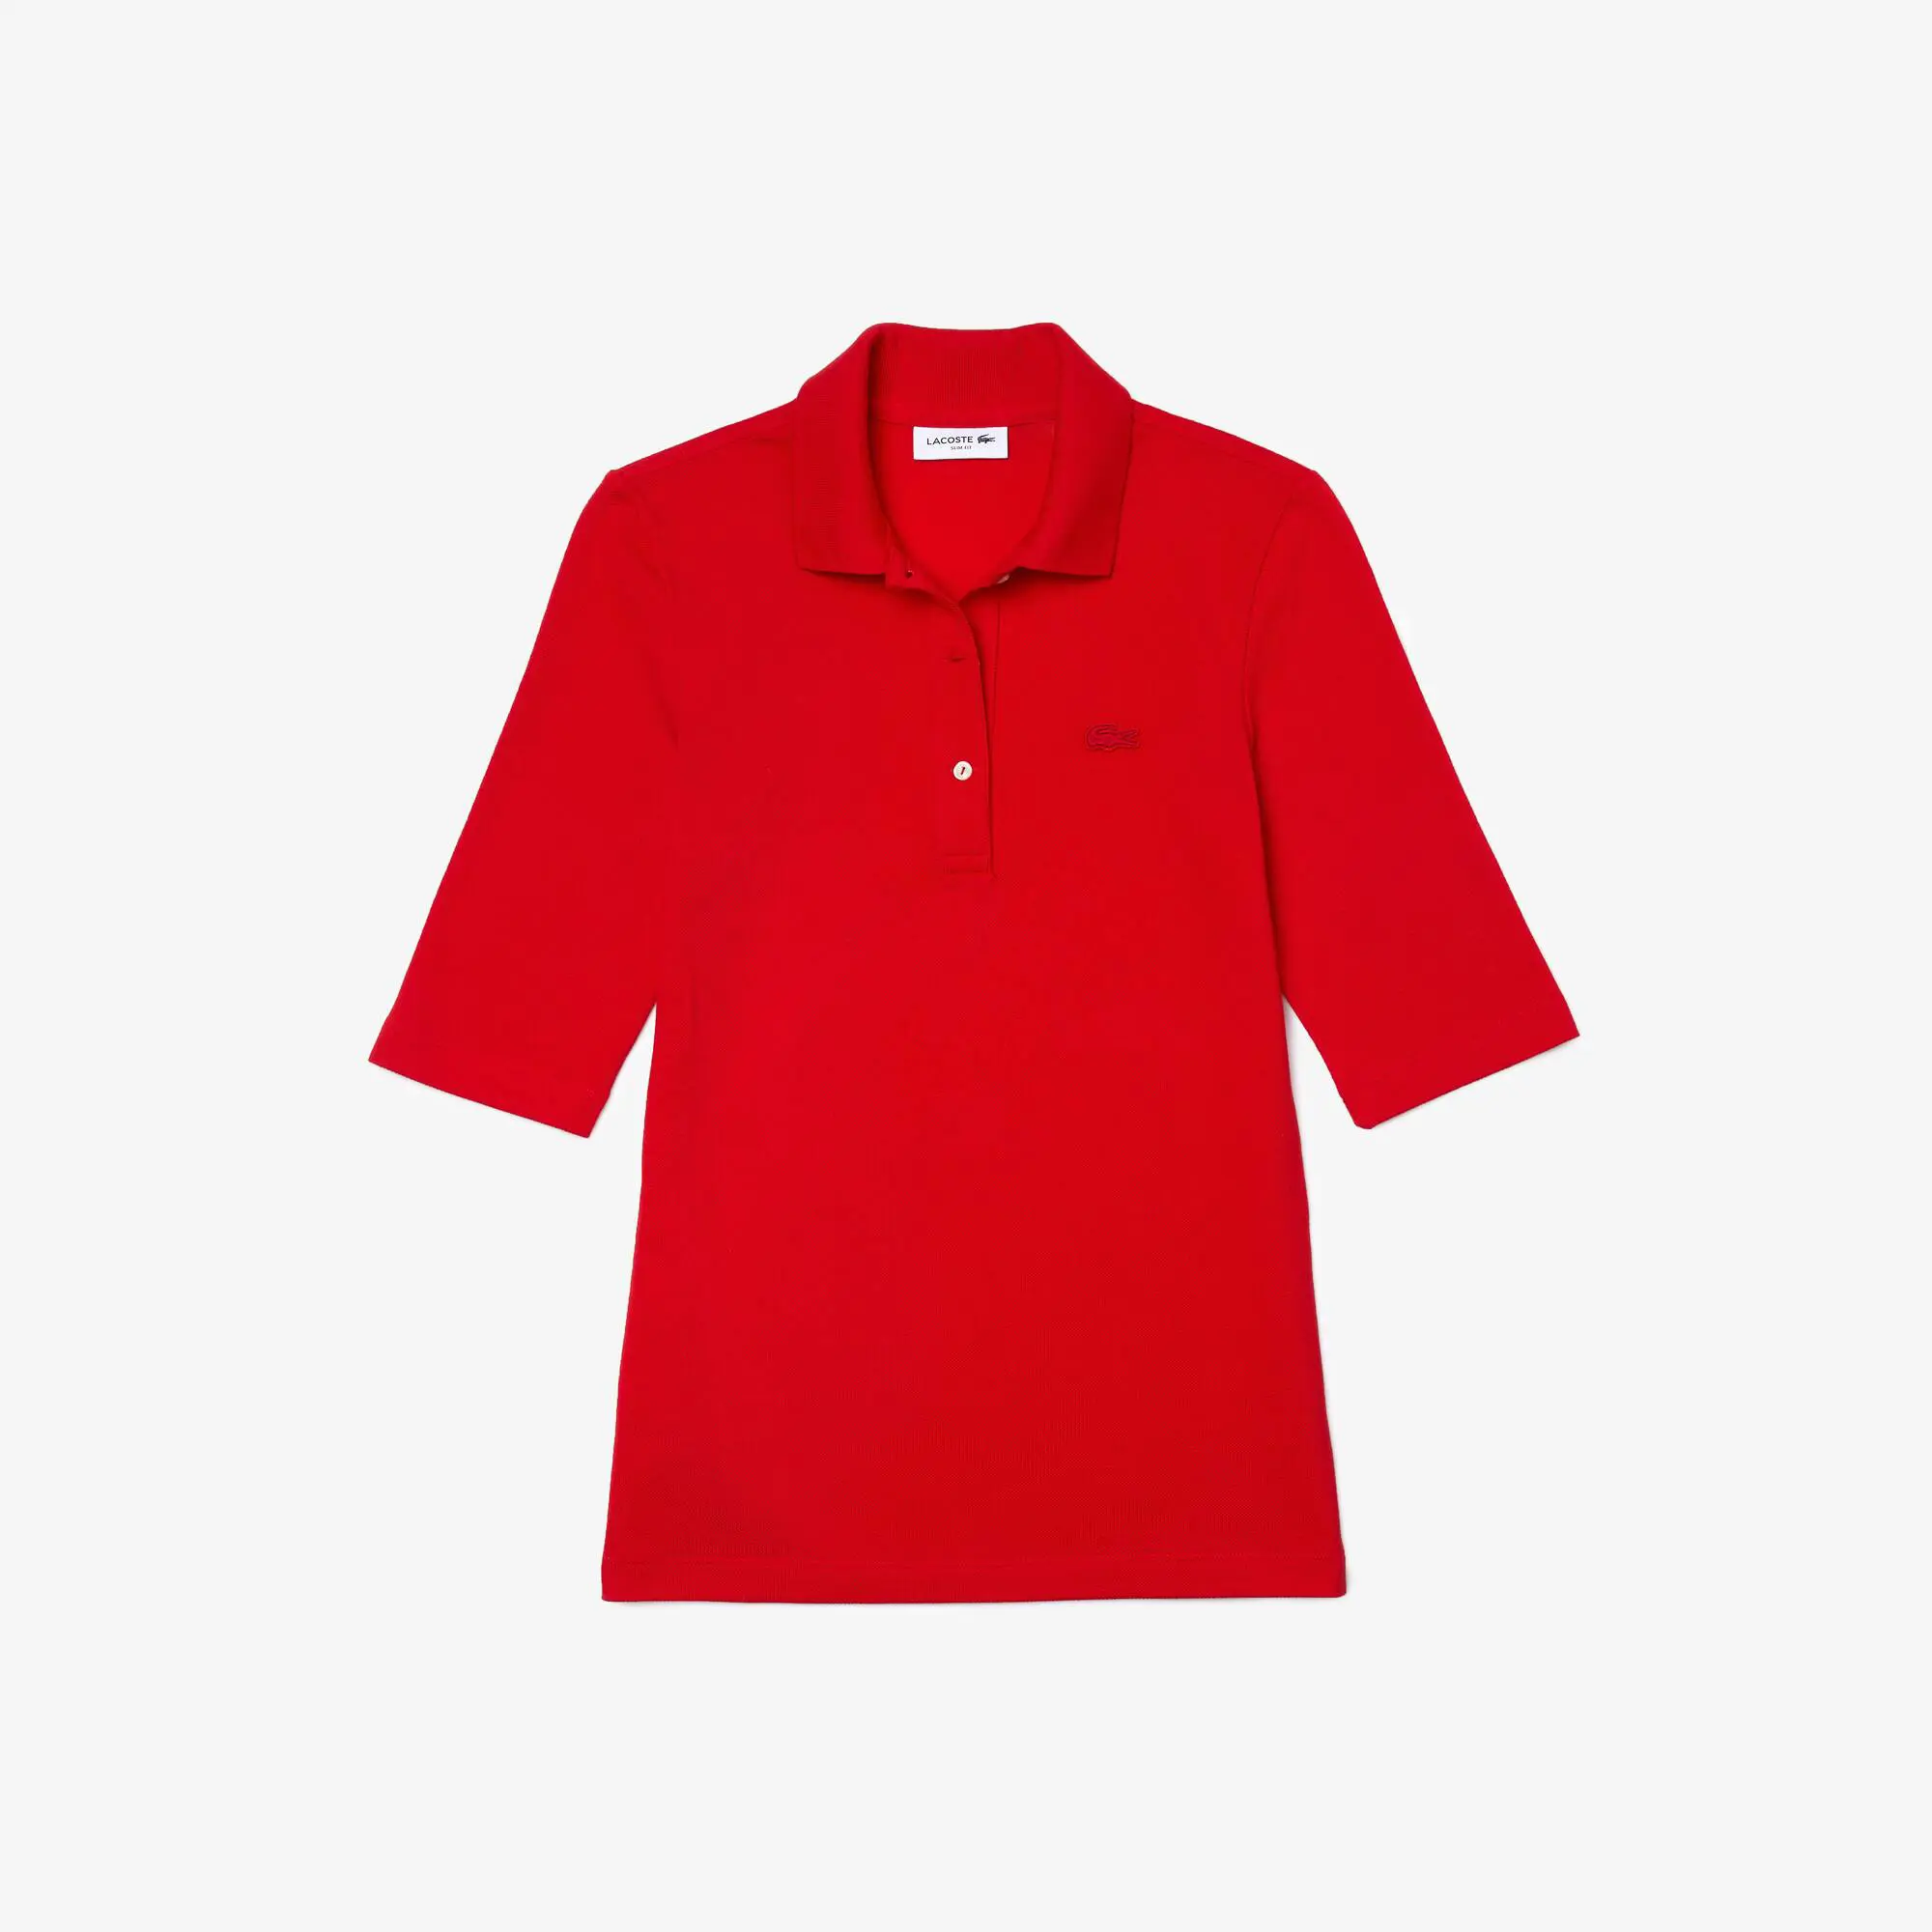 Lacoste Women's Lacoste Slim Fit Supple Cotton Polo Shirt. 2